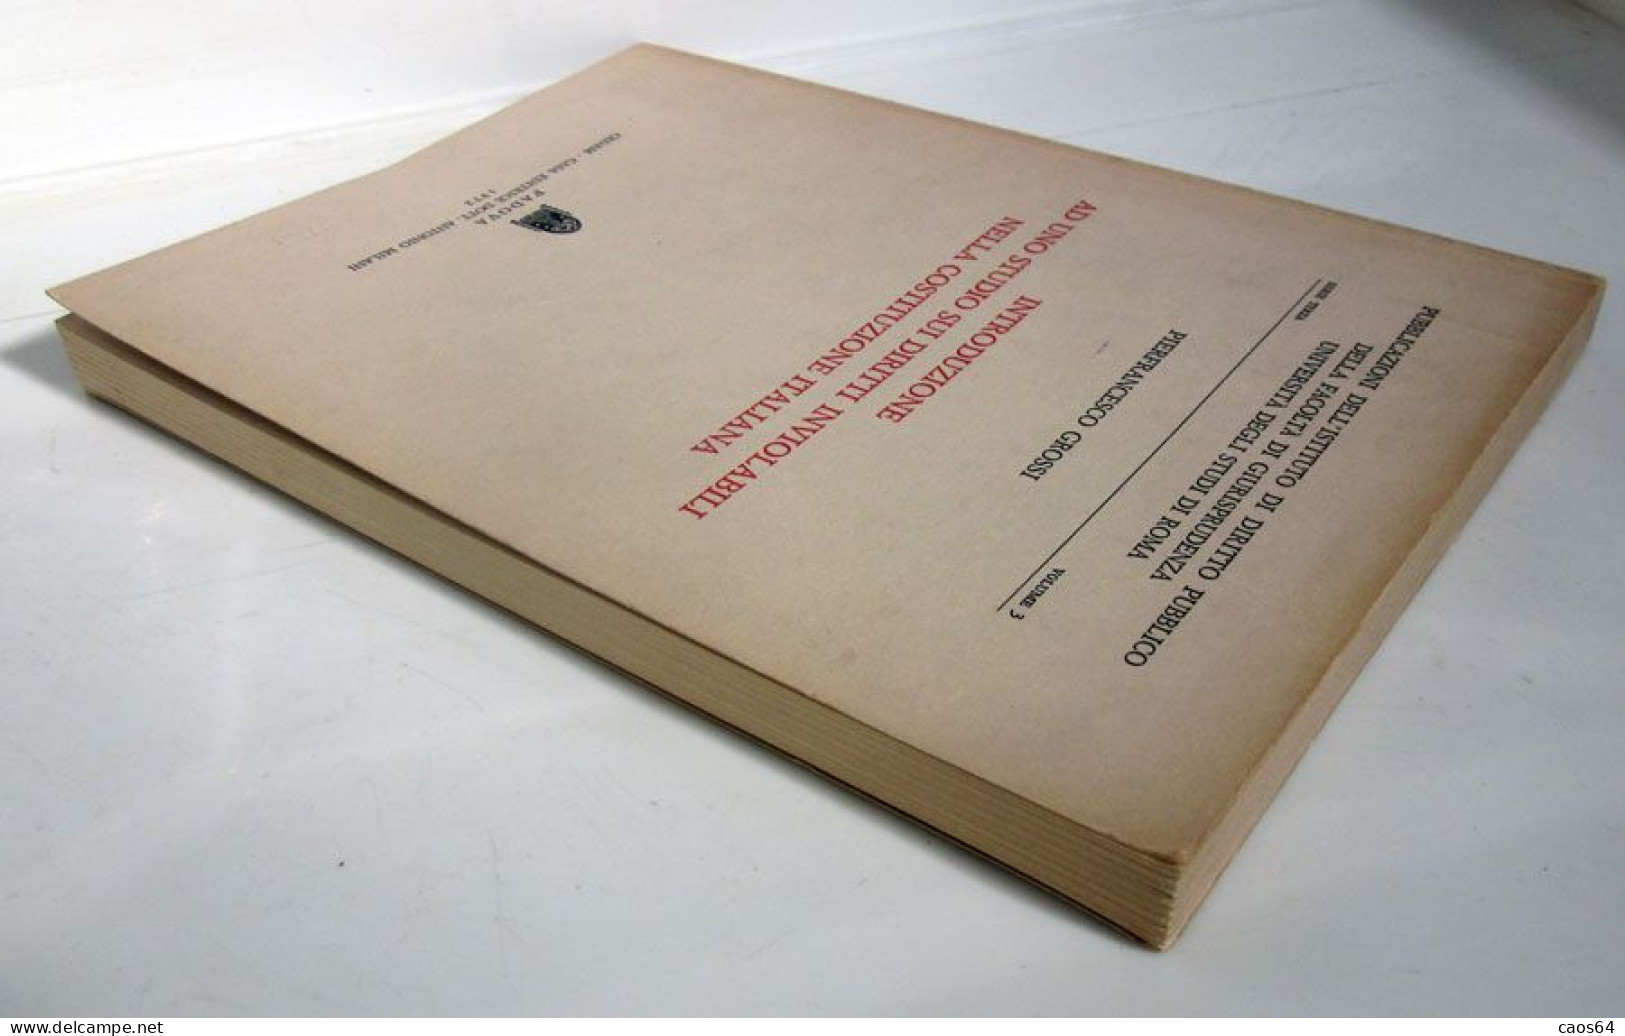 Introduzione Ad Uno Studio Sui Diritti Inviolabili Nella Costituzione Italiana 1972 Pierfrancesco Grossi CEDAM - Law & Economics